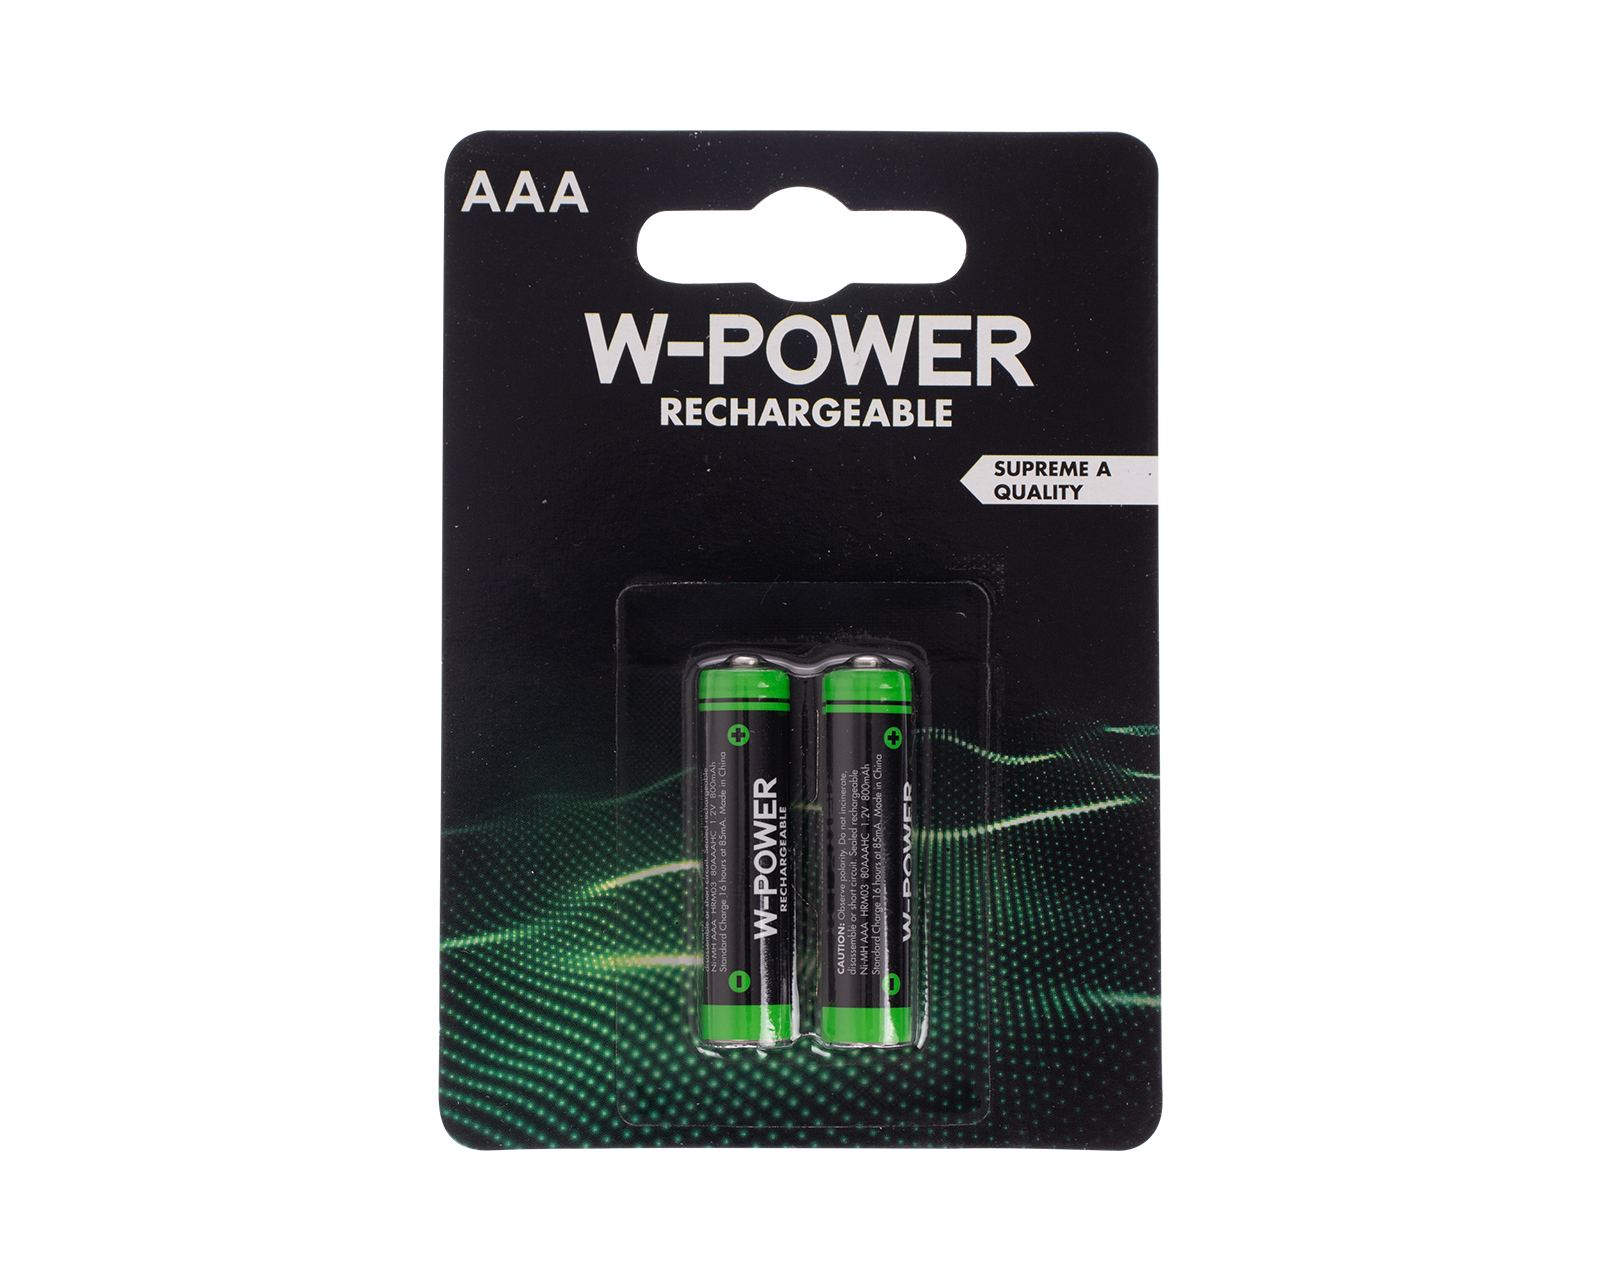 Verknald veelbelovend Verbaasd Batterijen AAA - oplaadbaar kopen? - Wibra Nederland - Dat doe je goed.